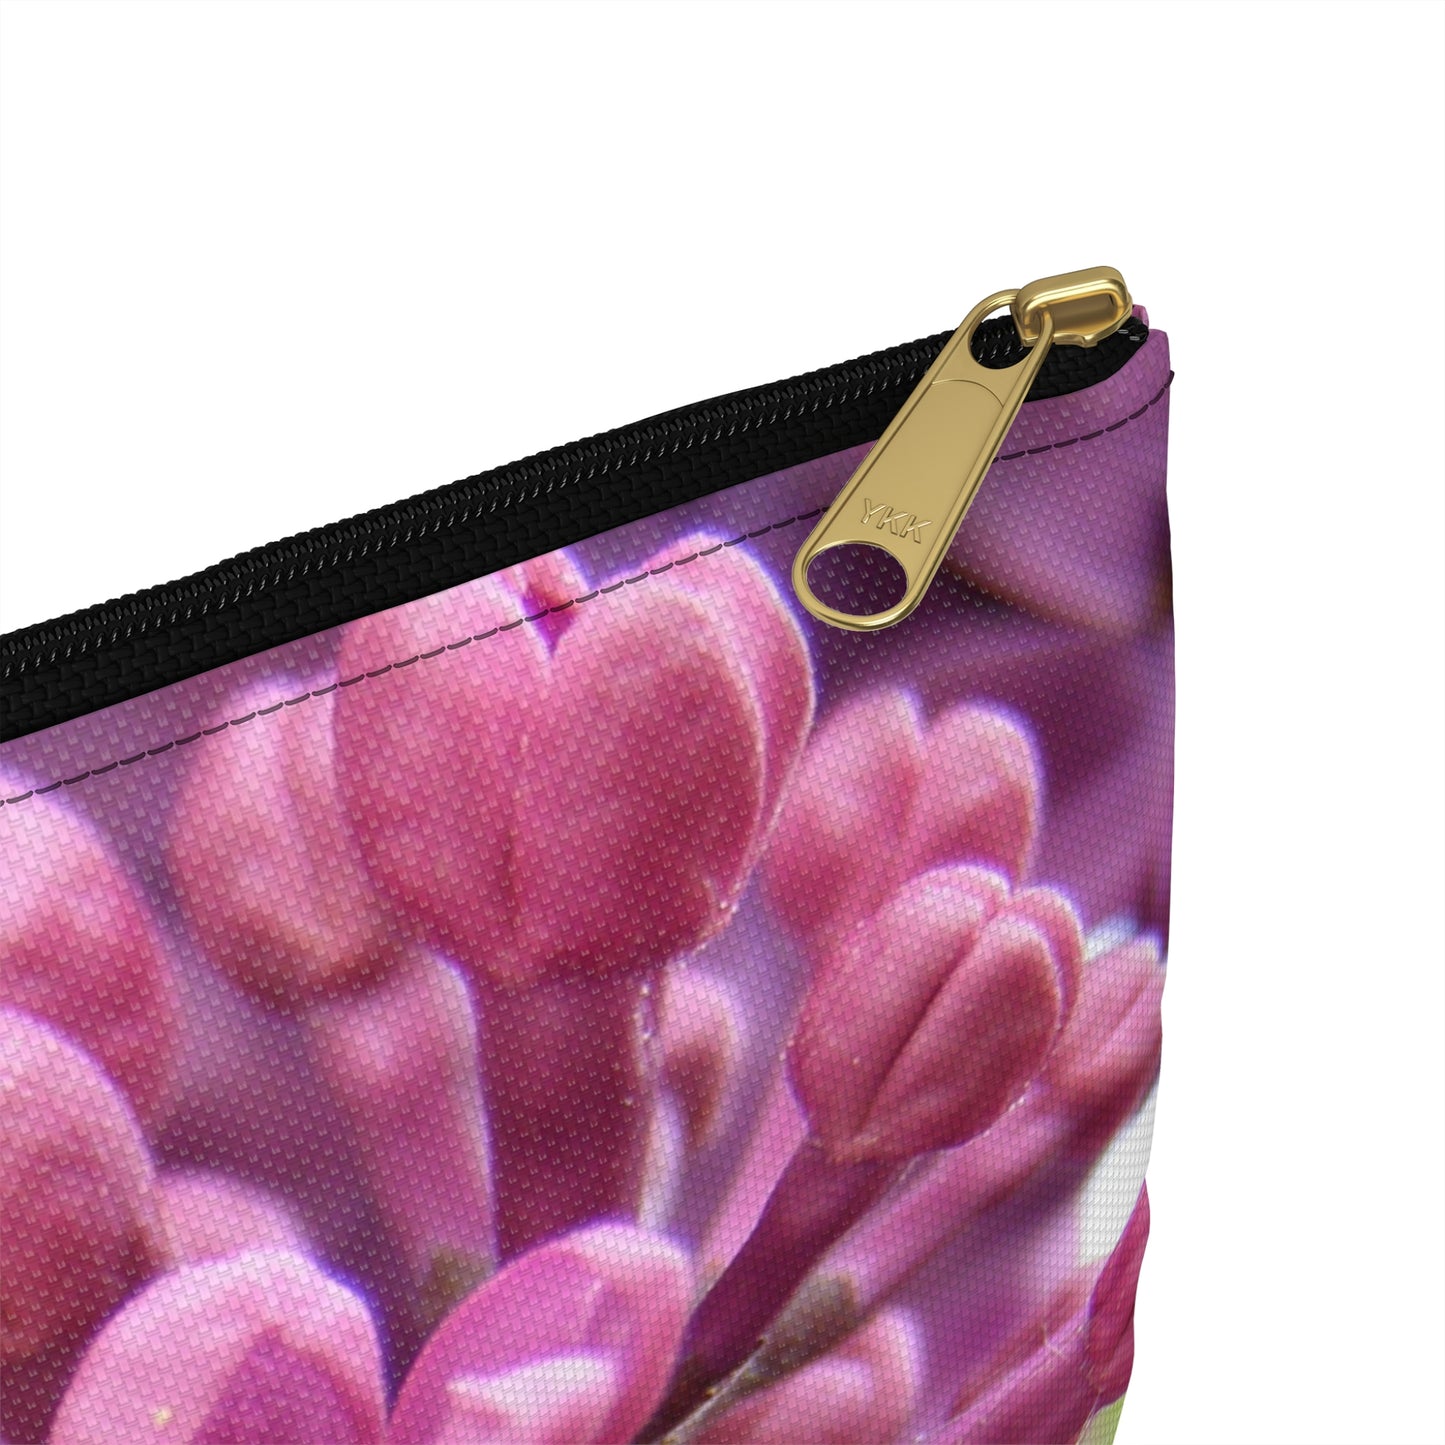 Flat Zipper Pouch - Lilacs in Bloom